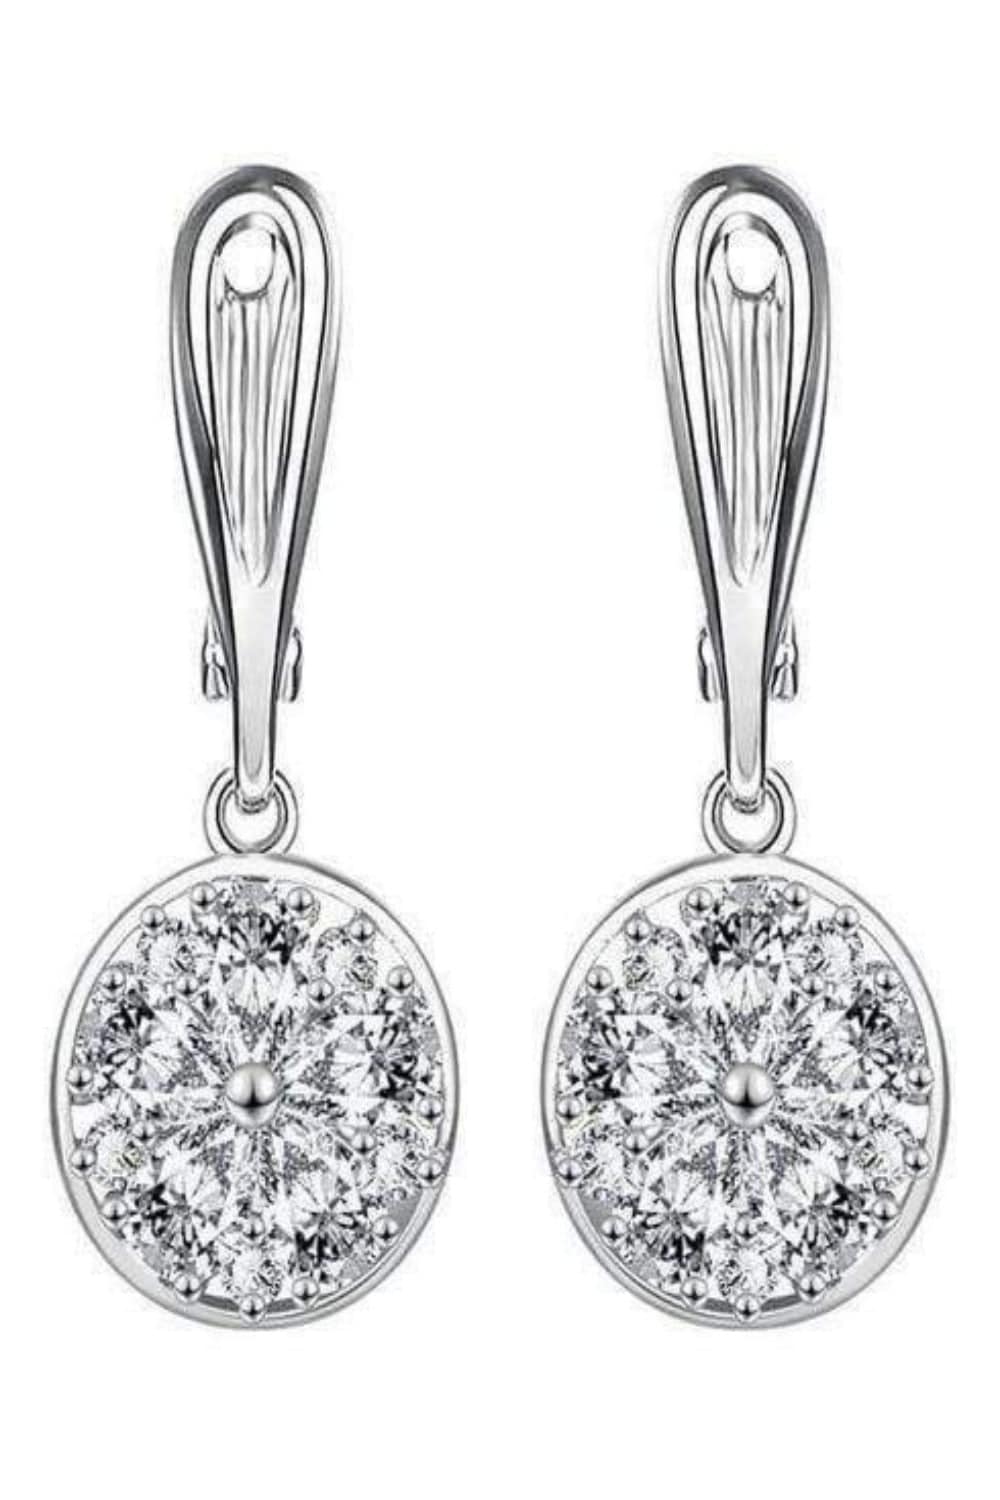 Stainless Steel Stud Silver Drop Earrings - TGC Boutique - Earrings